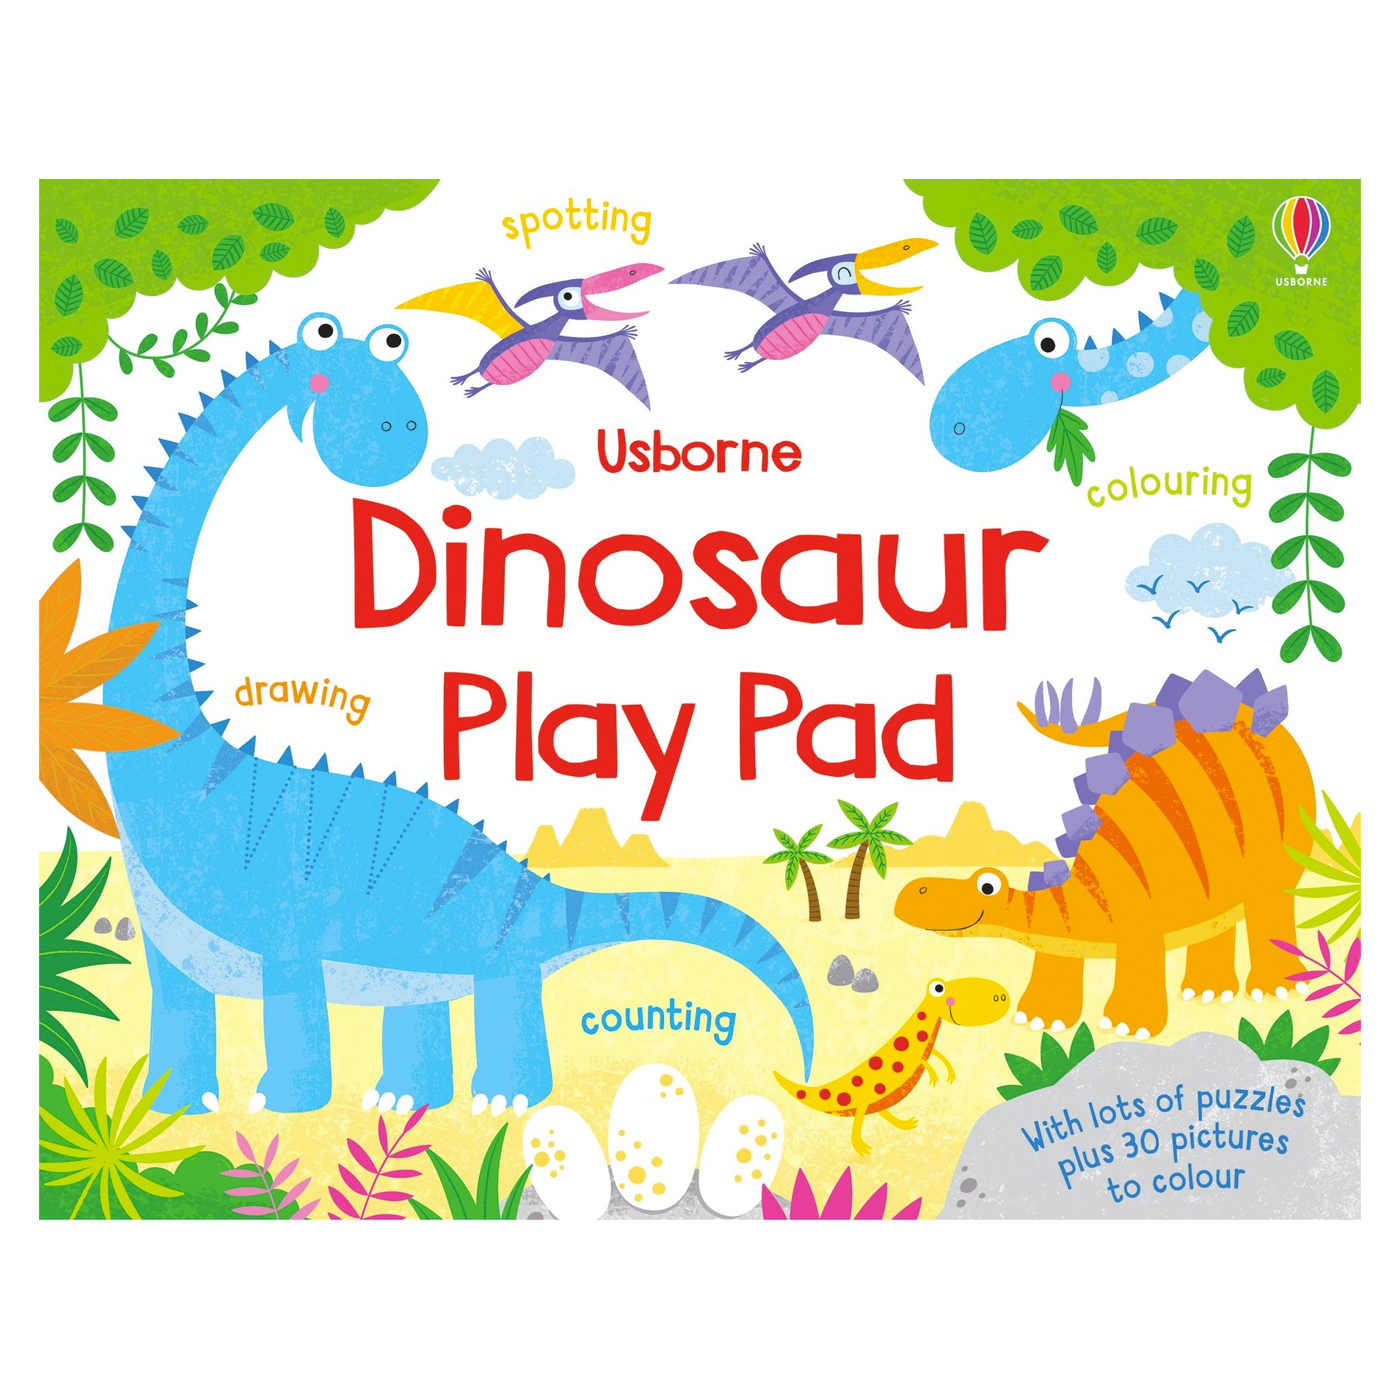  Dinosaur Play Pad